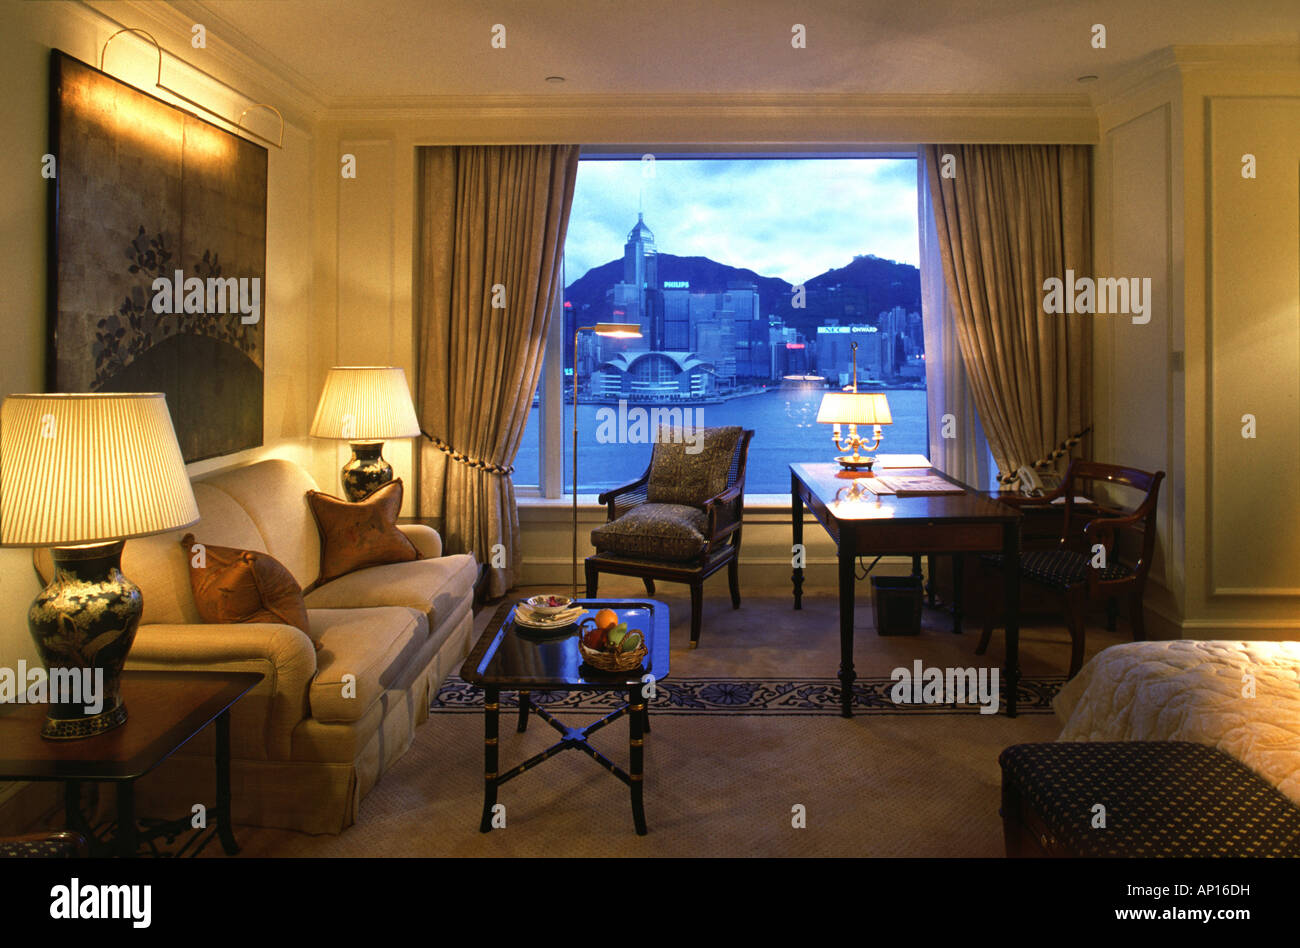 The Peninsula Hotel, Hongkong, China Stock Photo